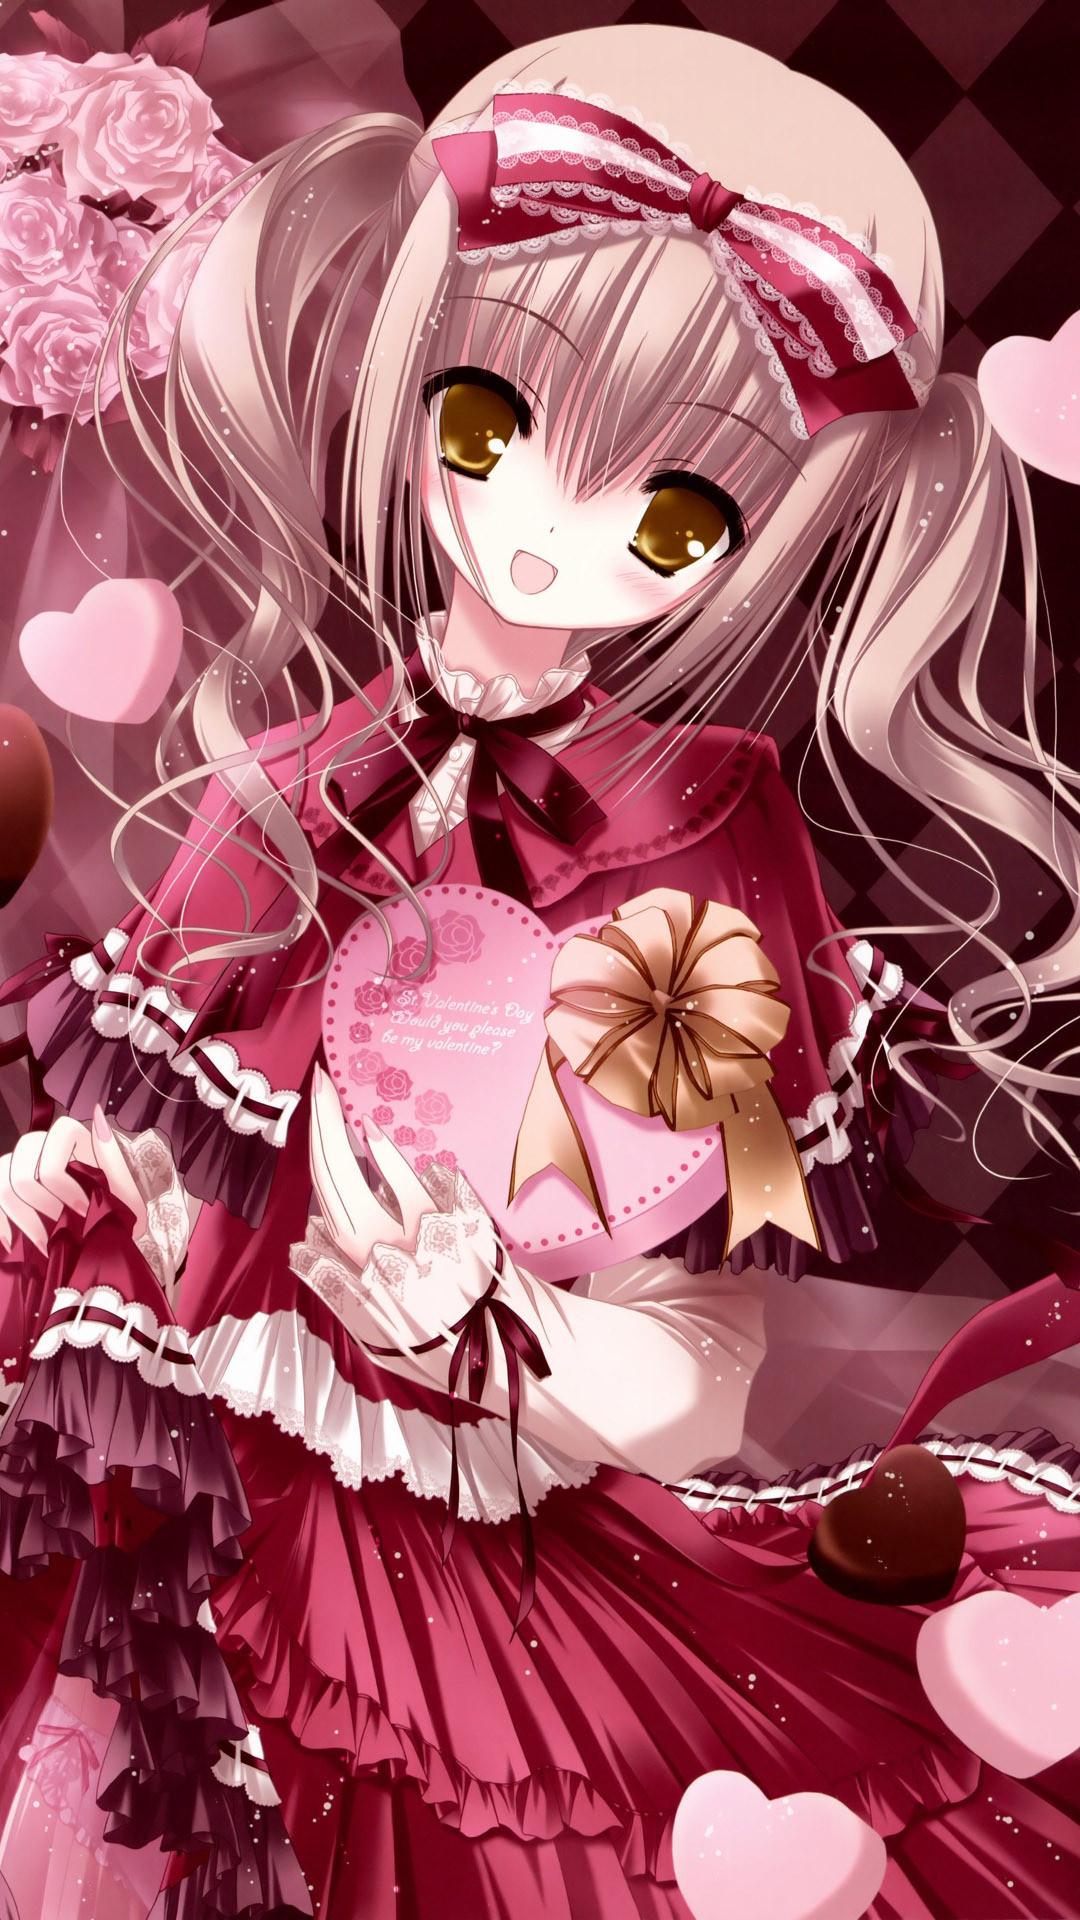 Đón chào ngày lễ tình yêu Valentine bằng một bộ sưu tập hình nền anime đáng yêu và ngọt ngào. Hãy xem những hình ảnh anime Valentine tuyệt đẹp để tạo cảm hứng cho tình yêu của bạn.